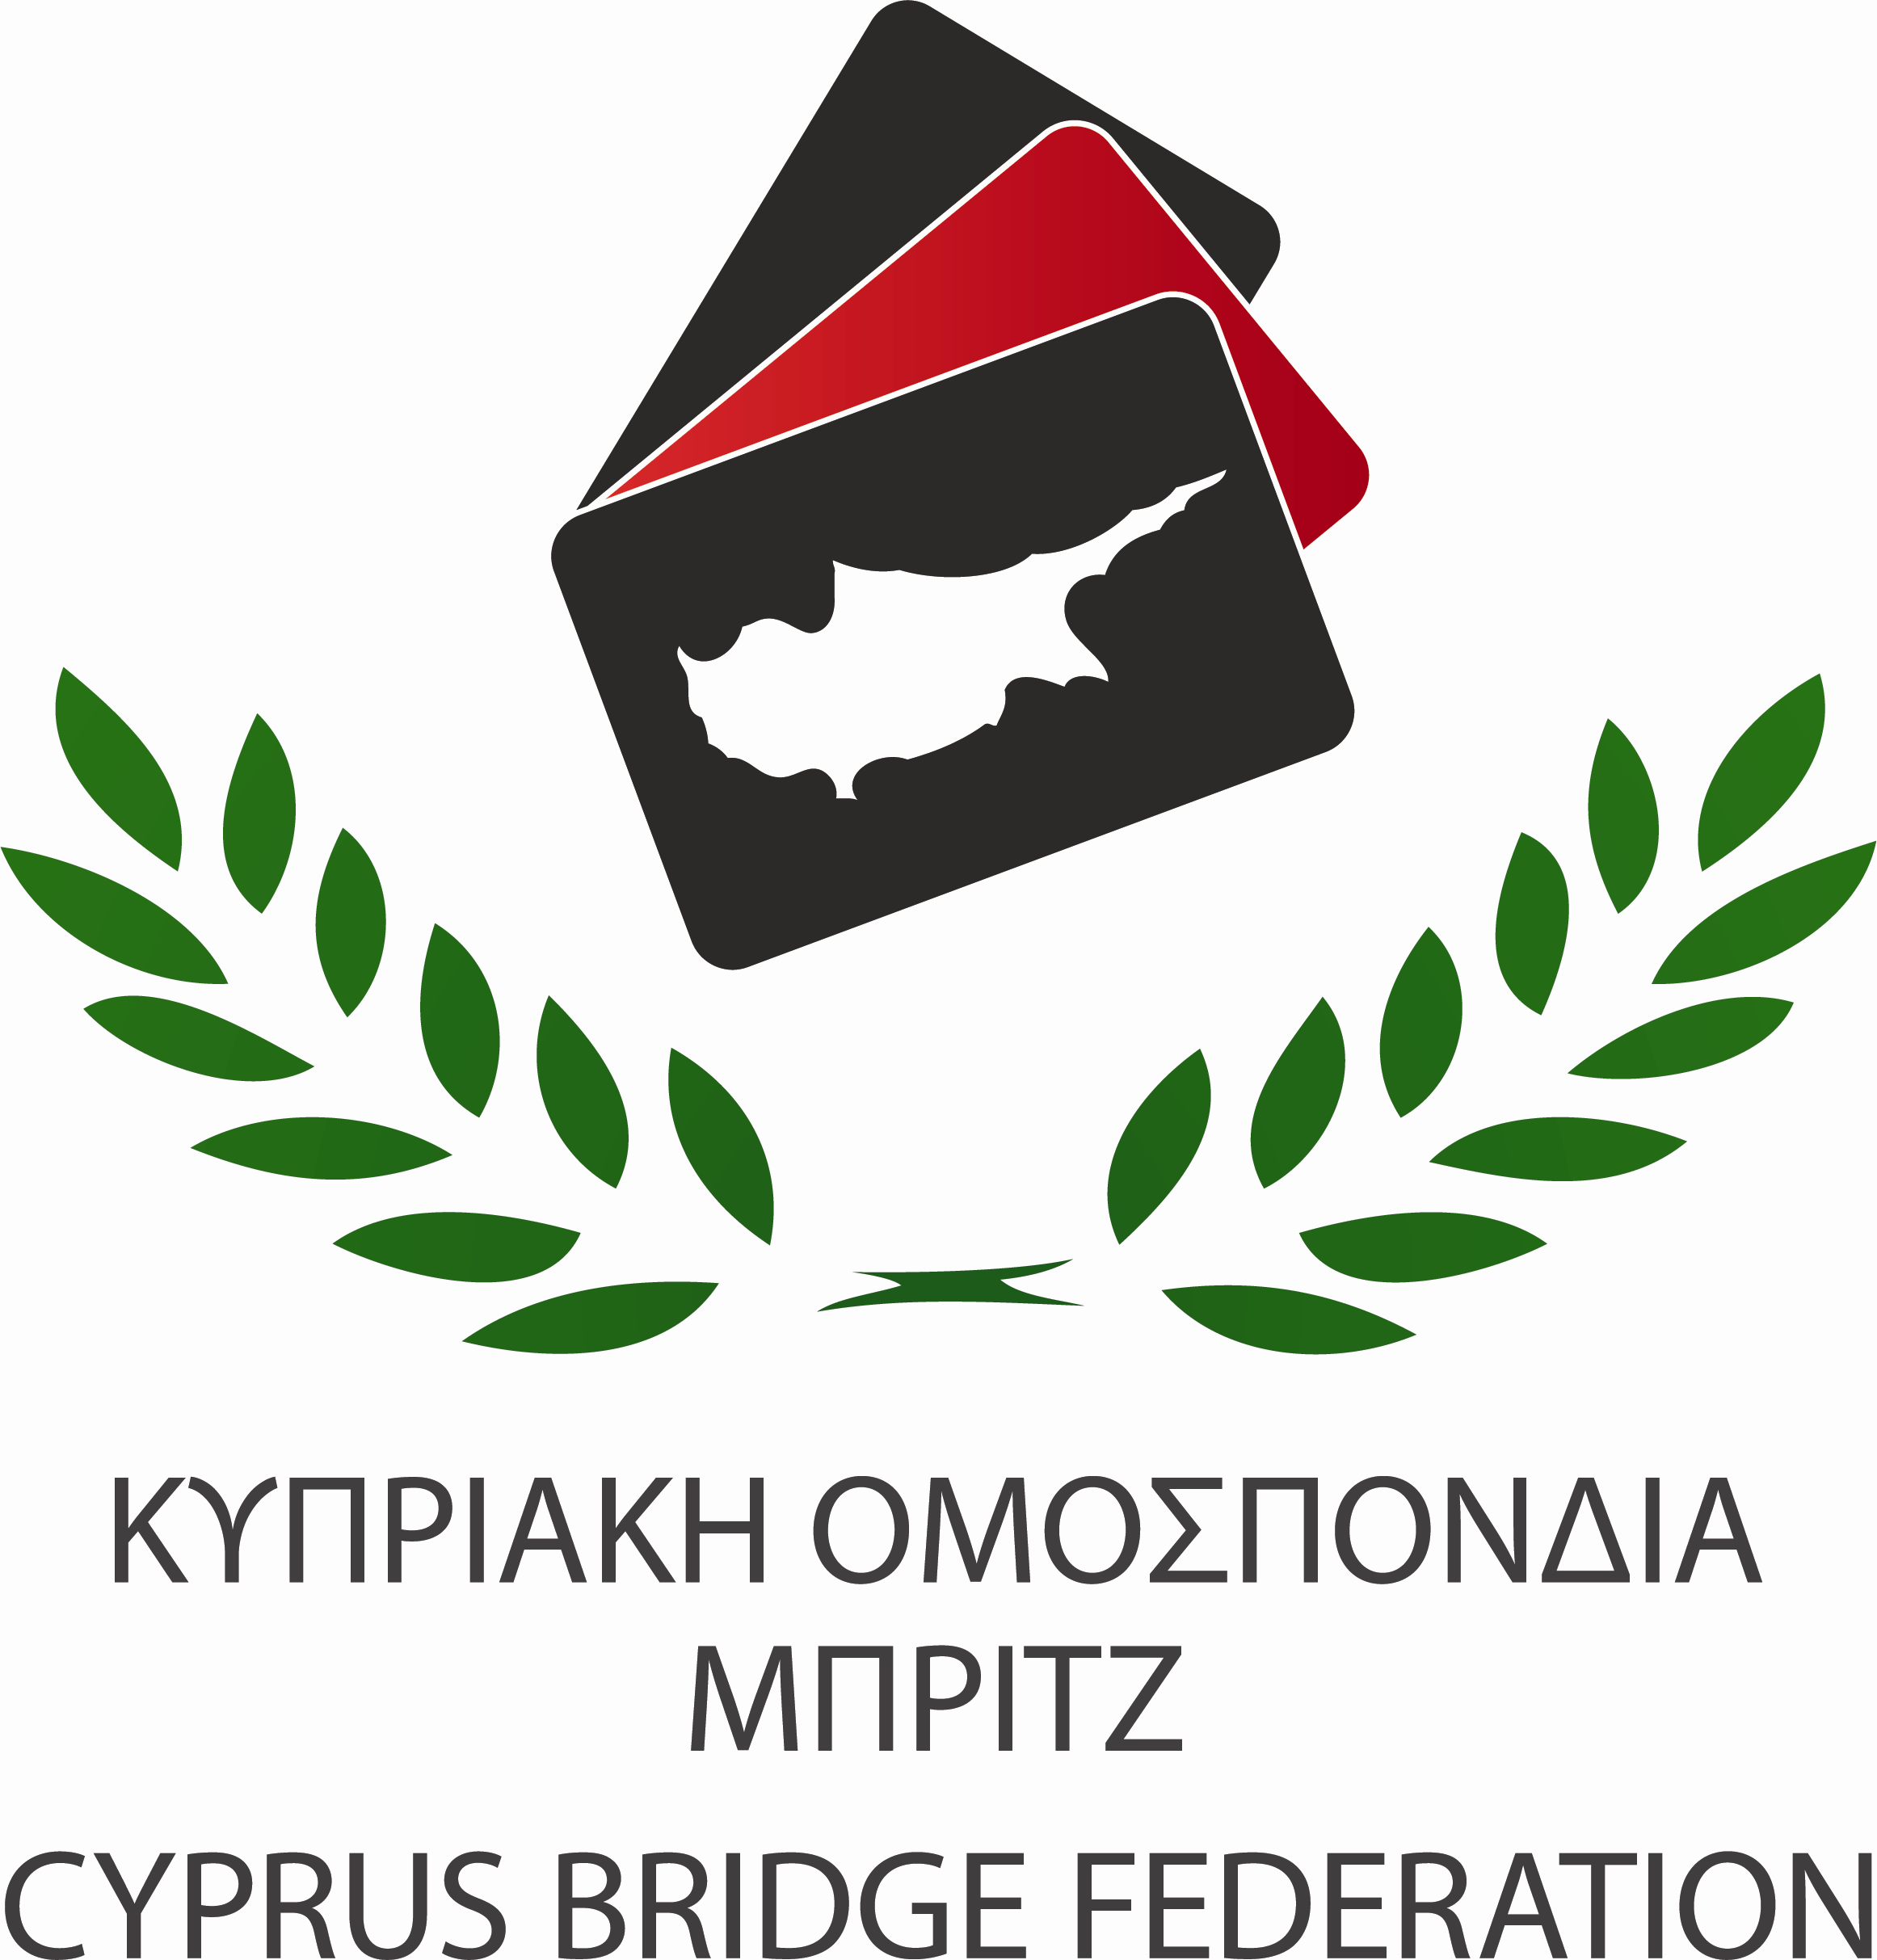 ΔΙΑΓΩΝΙΣΜΟΣ ΟΜΑΔΩΝ ΟΠΕΝ 2016 ΑΣΠΙΔΑ ΑΓΝΗΣ ΒΕΡΜΕΙΡΕΝ 6 ΦΕΒΡΟΥΑΡΙΟΥ 2016 & 13 ΦΕΒΡΟΥΑΡΙΟΥ 2016 ΠΡΟΚΗΡΥΞΗ Διοργάνωση Οι διοργανωτές του διαγωνισμού είναι η Κυπριακή Ομοσπονδία Μπριτζ, οι οποίοι και